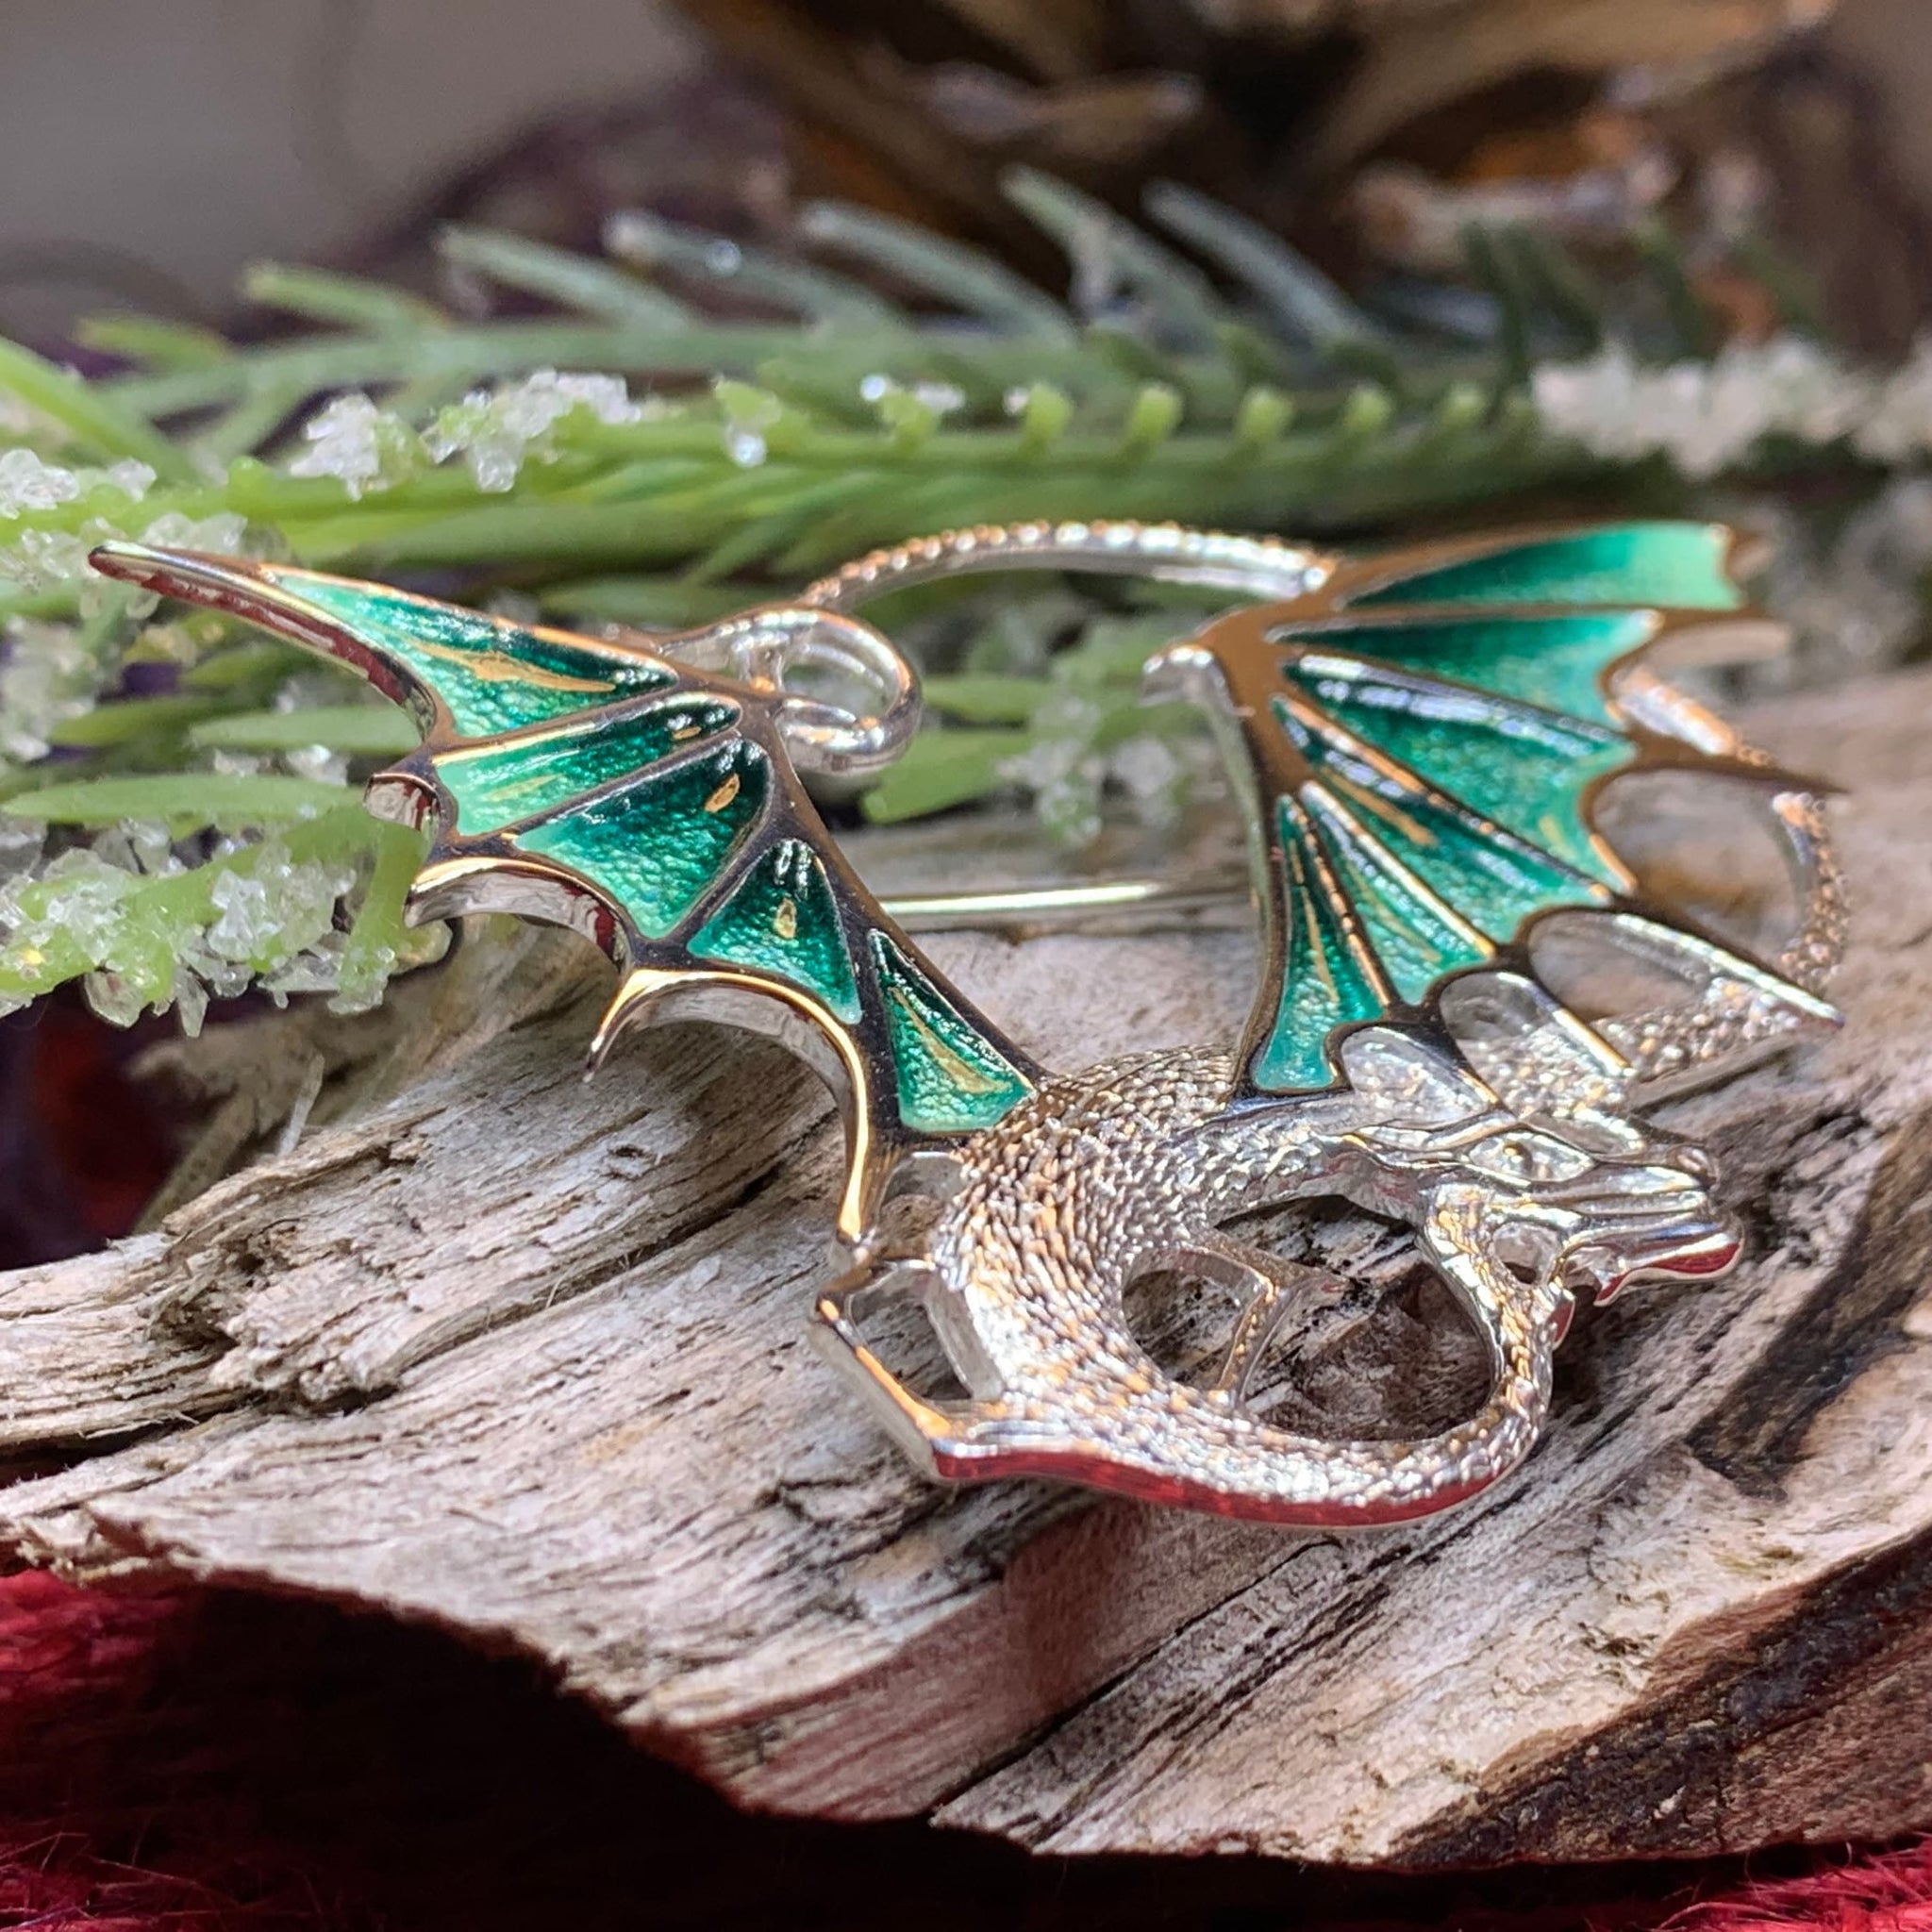 Handmade Unique Fantasy Dragon Key Necklace | DreamCloudJewelry